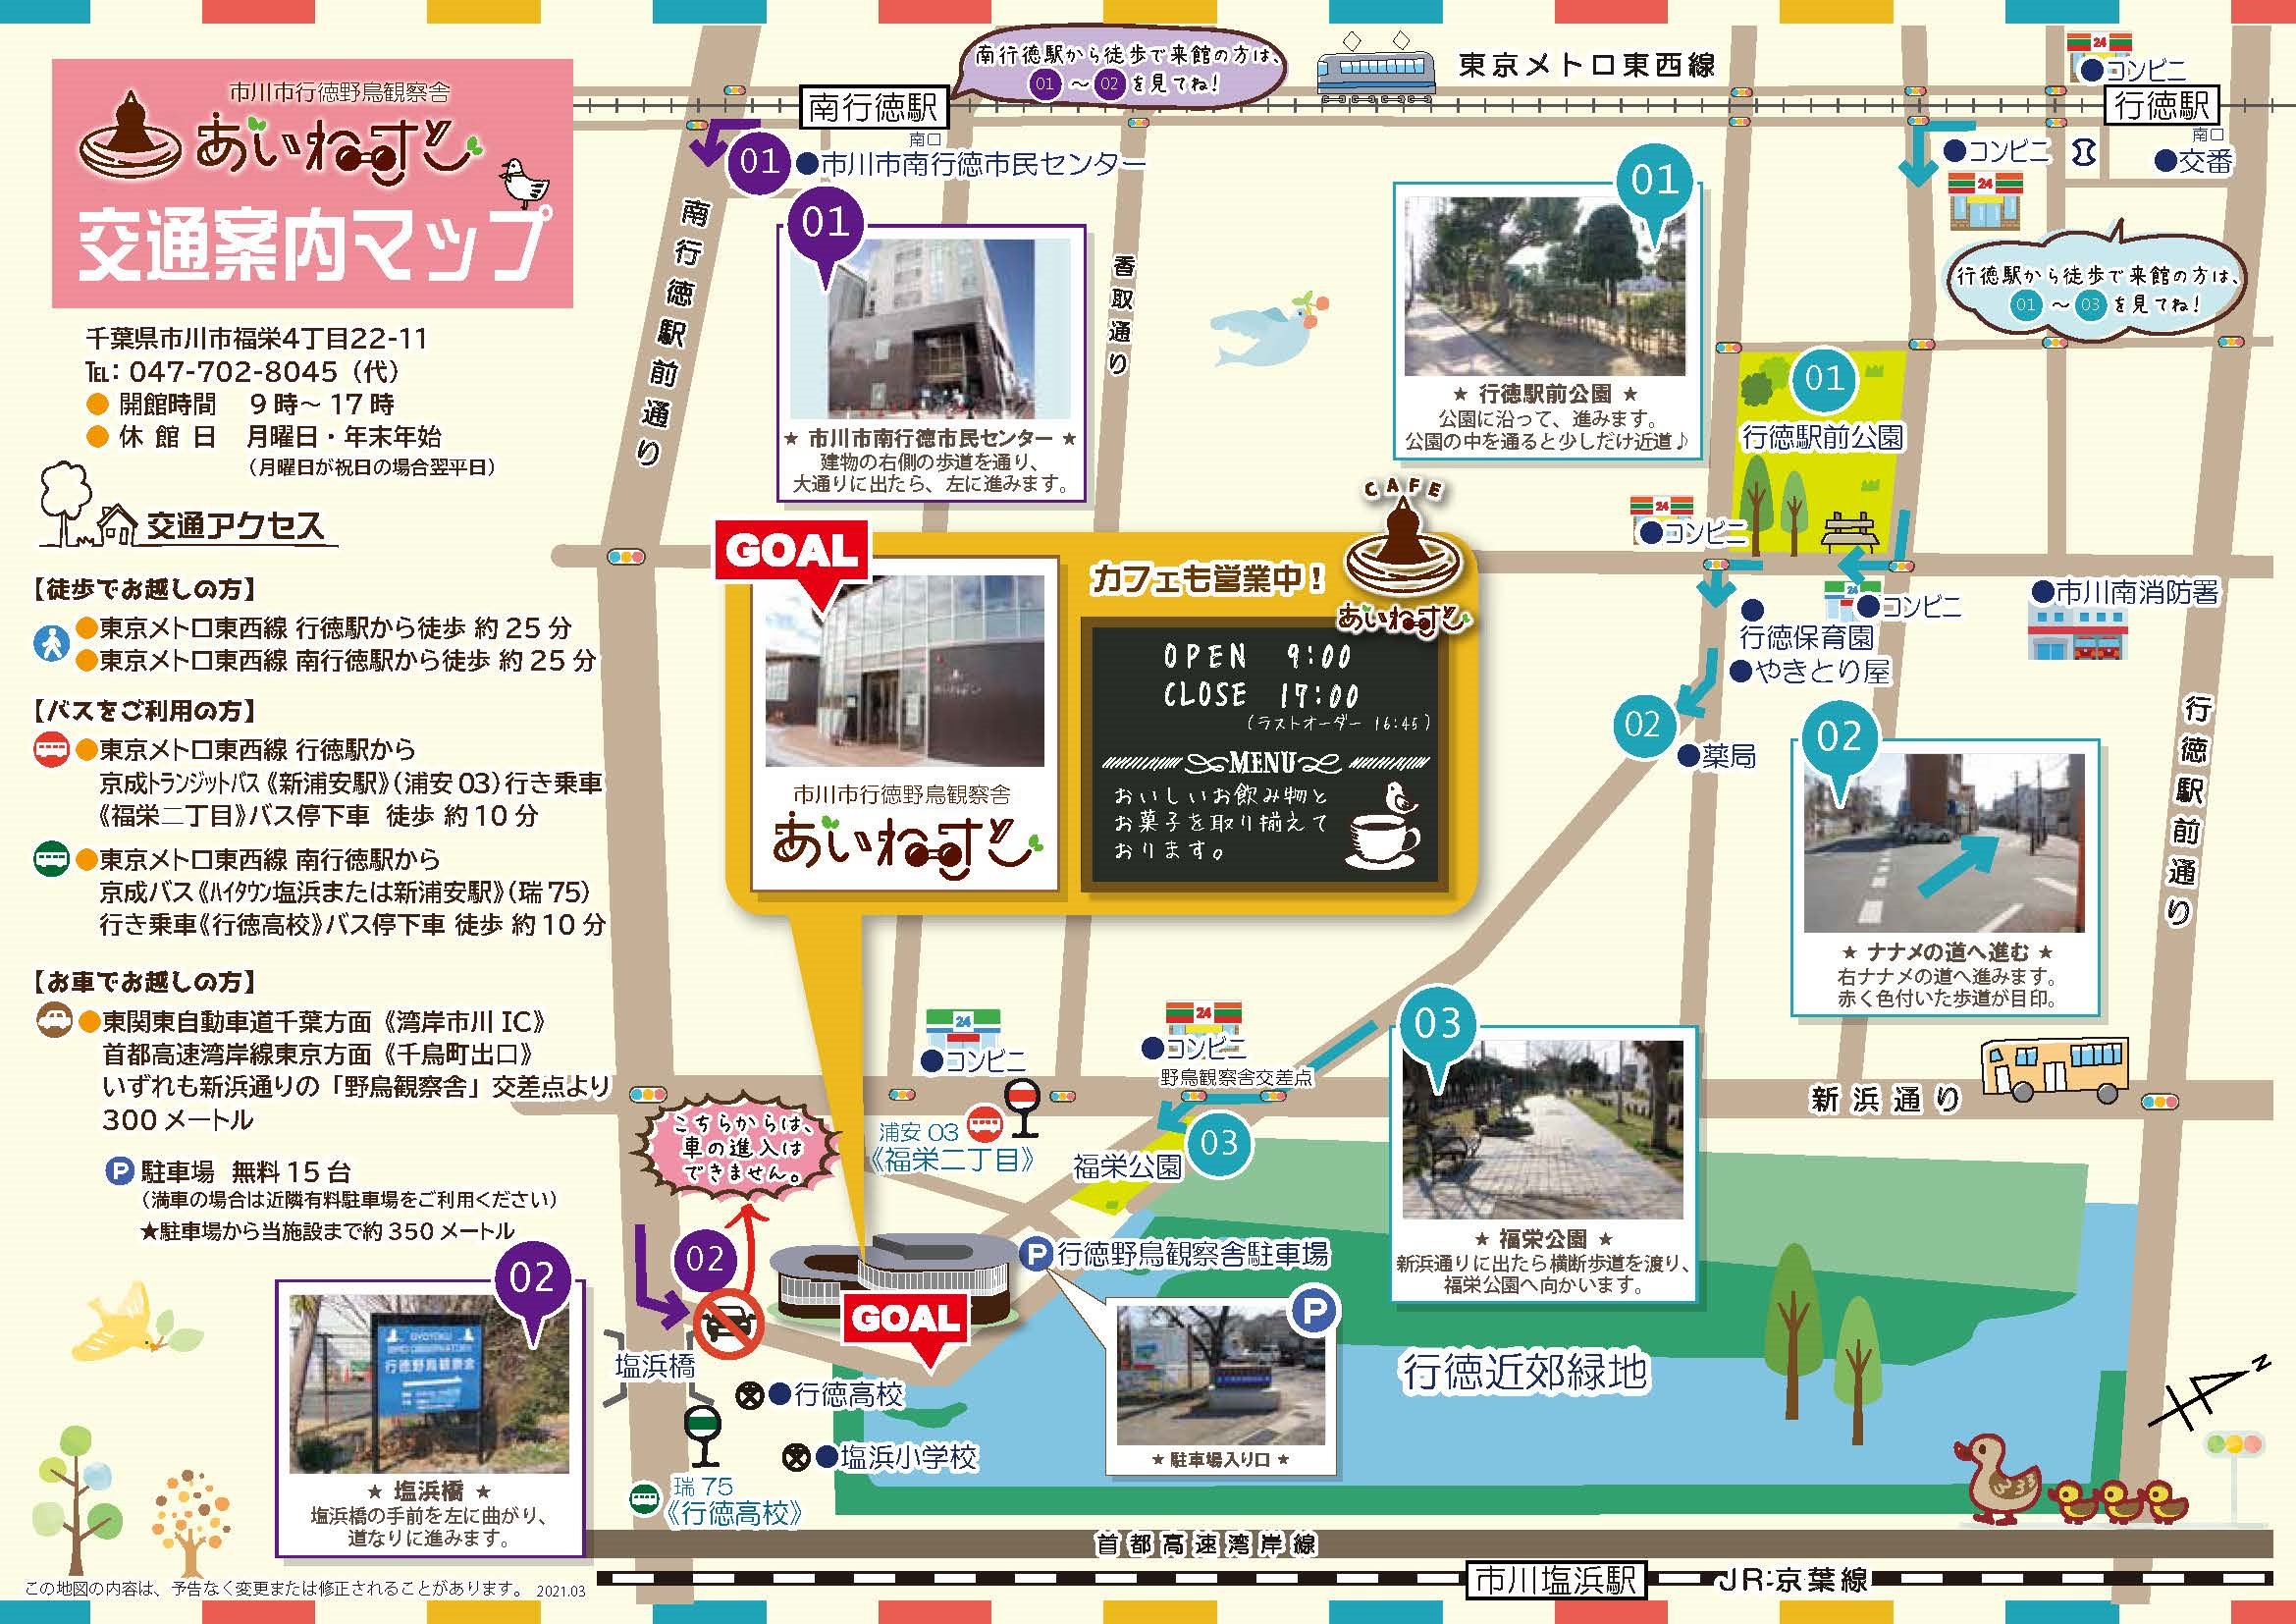 あいねすと案内マップ あいねすとへは東京メトロ行徳駅または南行徳駅から歩いて約25分です。バスをご利用の場合は、東京メトロ行徳駅から京成トランジットバスの新浦安駅行きに乗り、福栄2丁目バス停で降りてから歩いて約10分です。